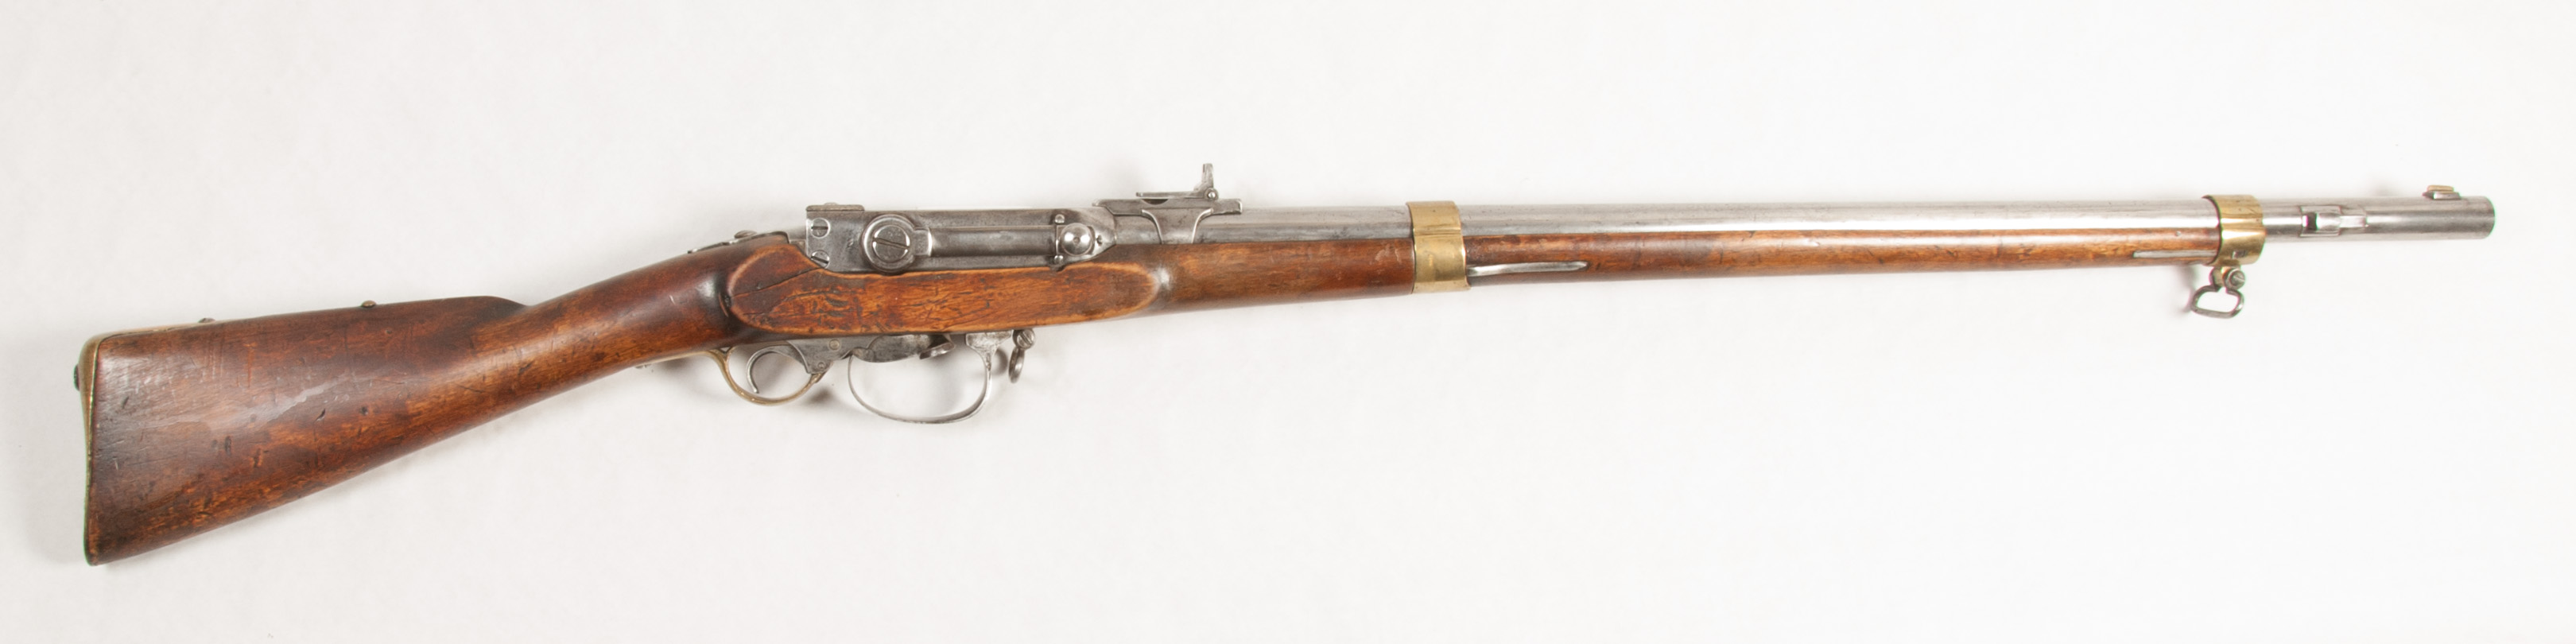 ./guns/rifle/bilder/Rifle-Kongsberg-Kammerlader-M1848-57-Modell-II-32-1.jpg